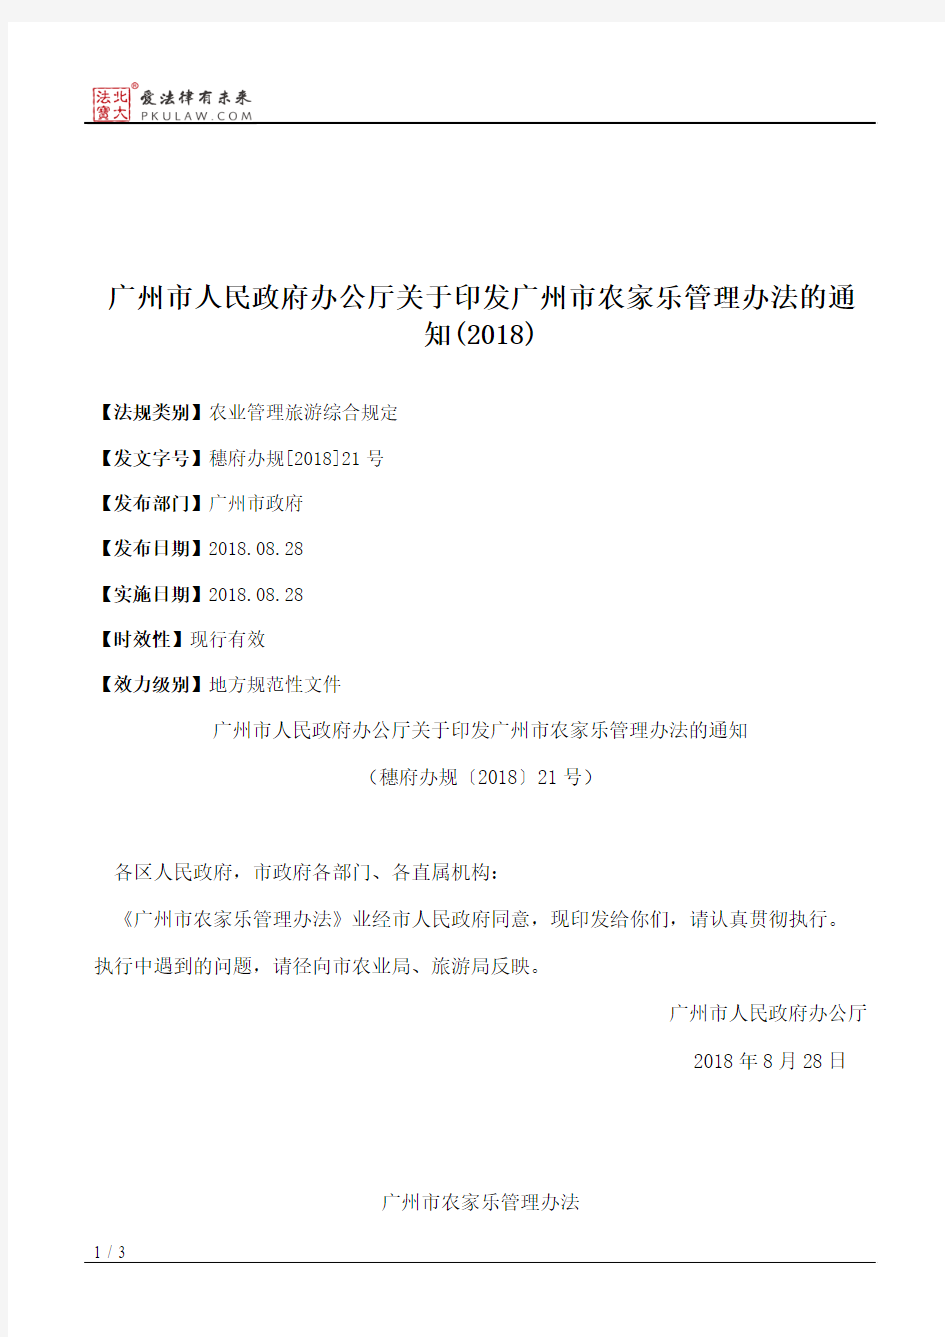 广州市人民政府办公厅关于印发广州市农家乐管理办法的通知(2018)